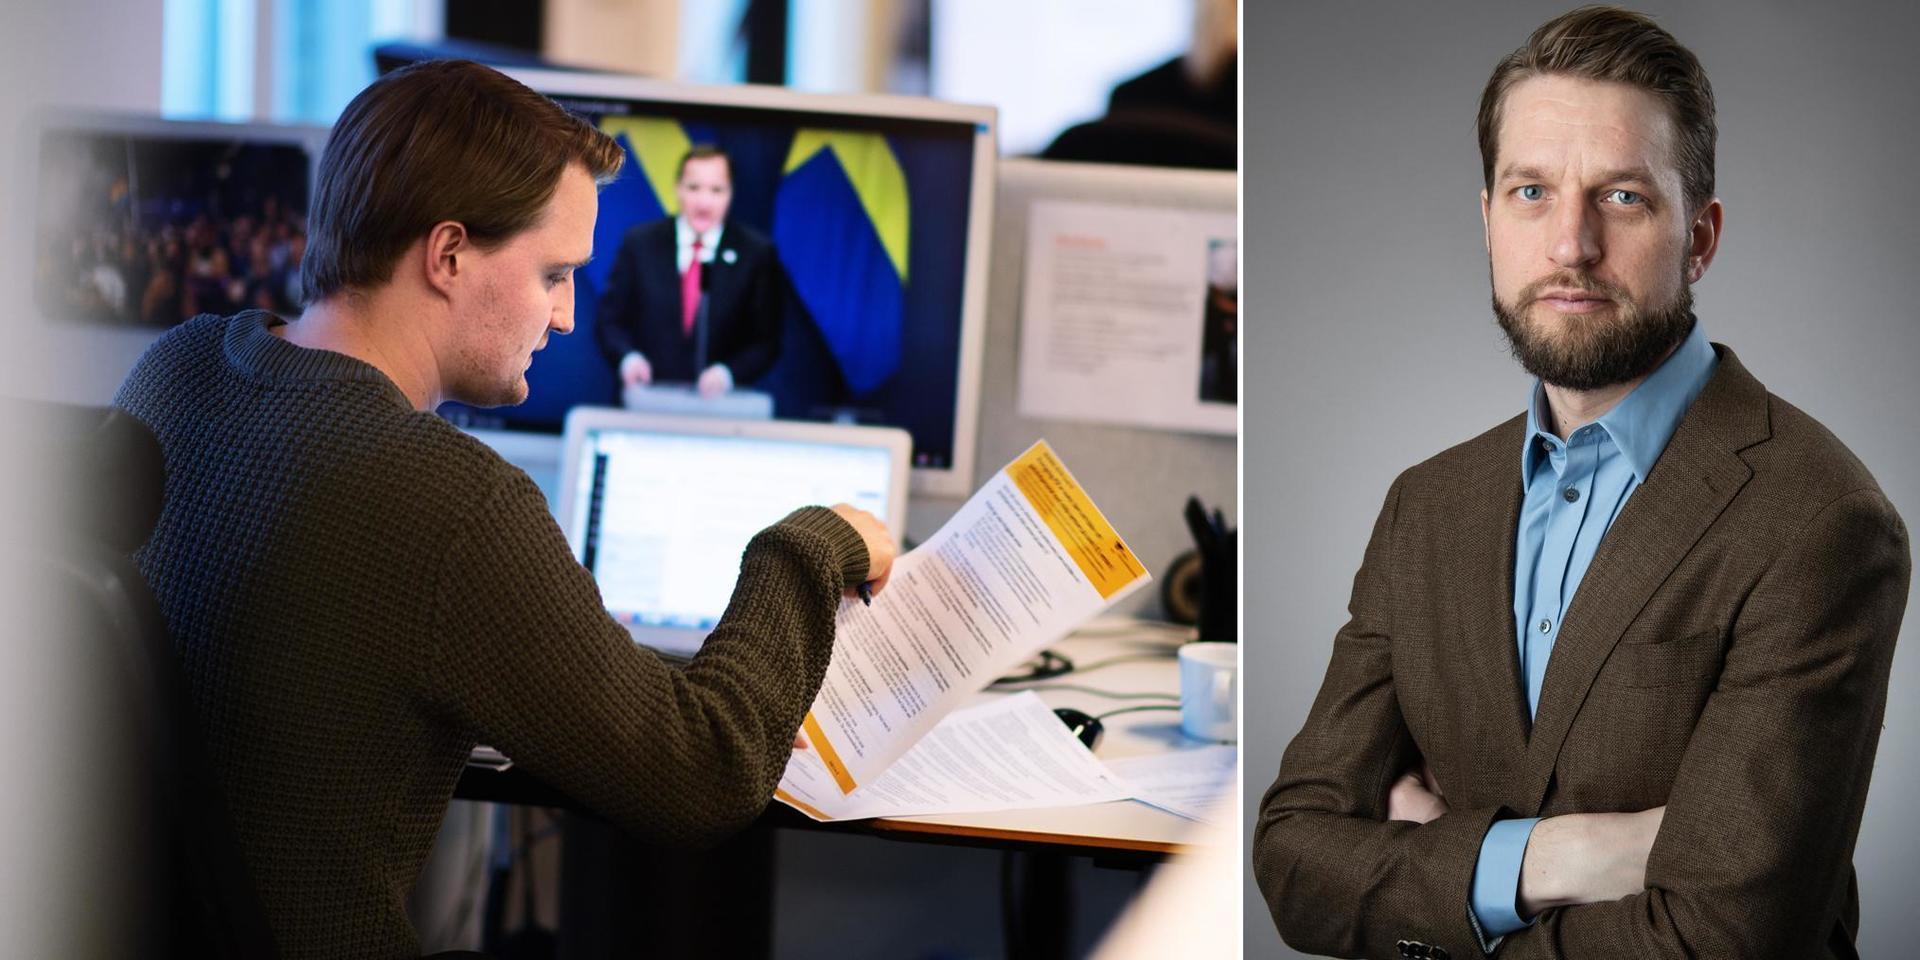 ”I alla dessa sorgliga berättelser har journalistiken en viktig roll att fylla”, menar GP:s chefredaktör Christofer Ahlqvist. Till vänster Filip Persson, nyhetsreporter på Göteborg-Posten.